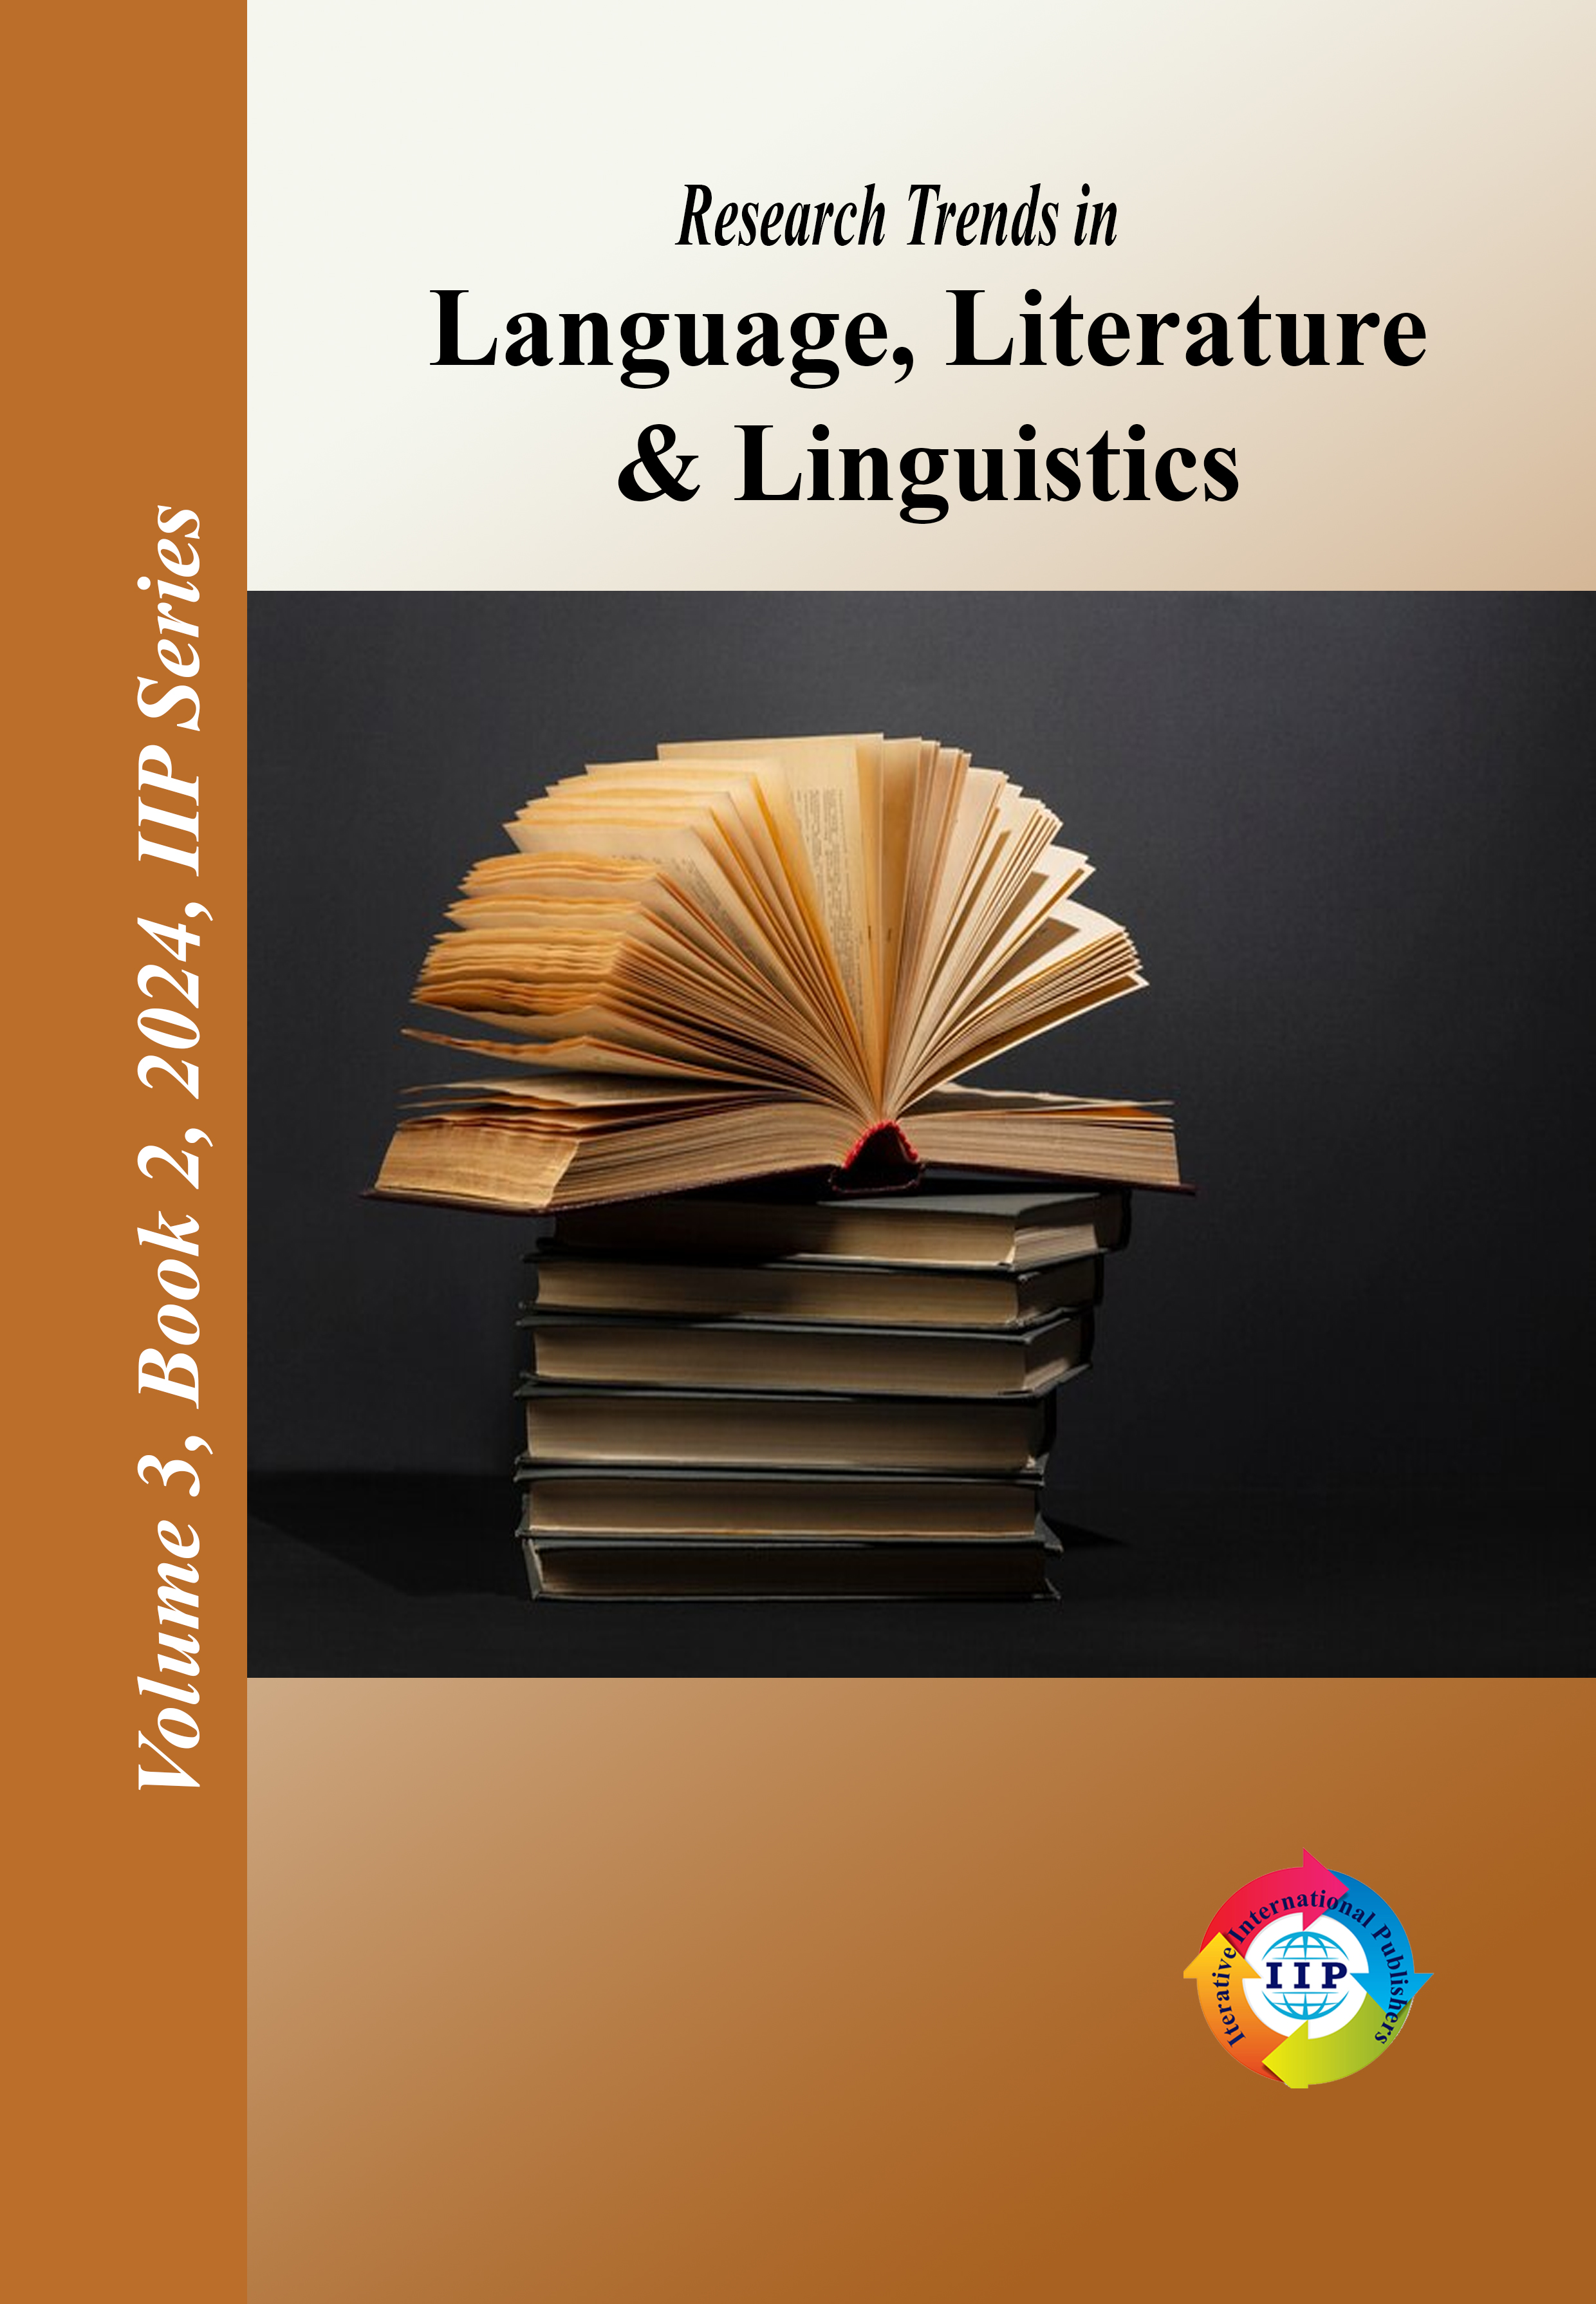 Futuristic Trends in Research Trends in Language, Literature & Linguistics Volume 3 Book 2